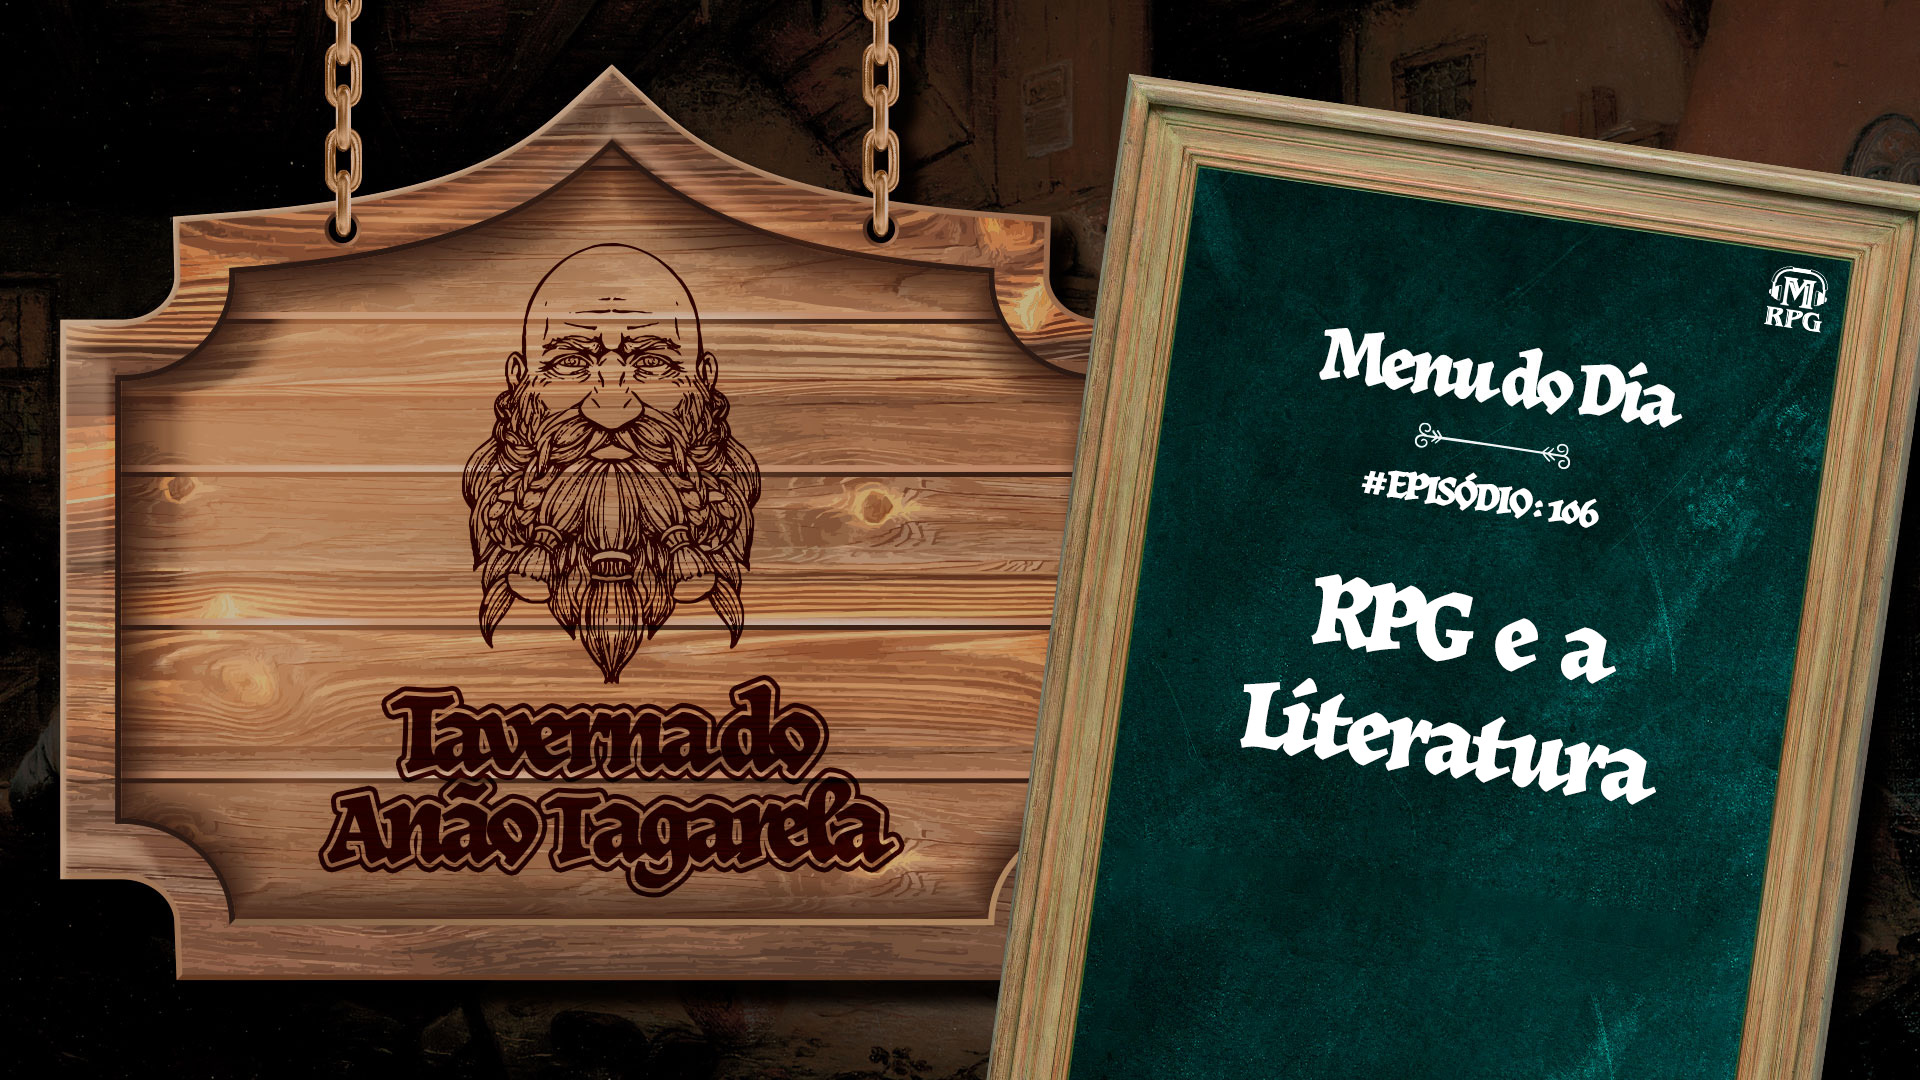 RPG e a Literatura – Taverna do Anão Tagarela #106